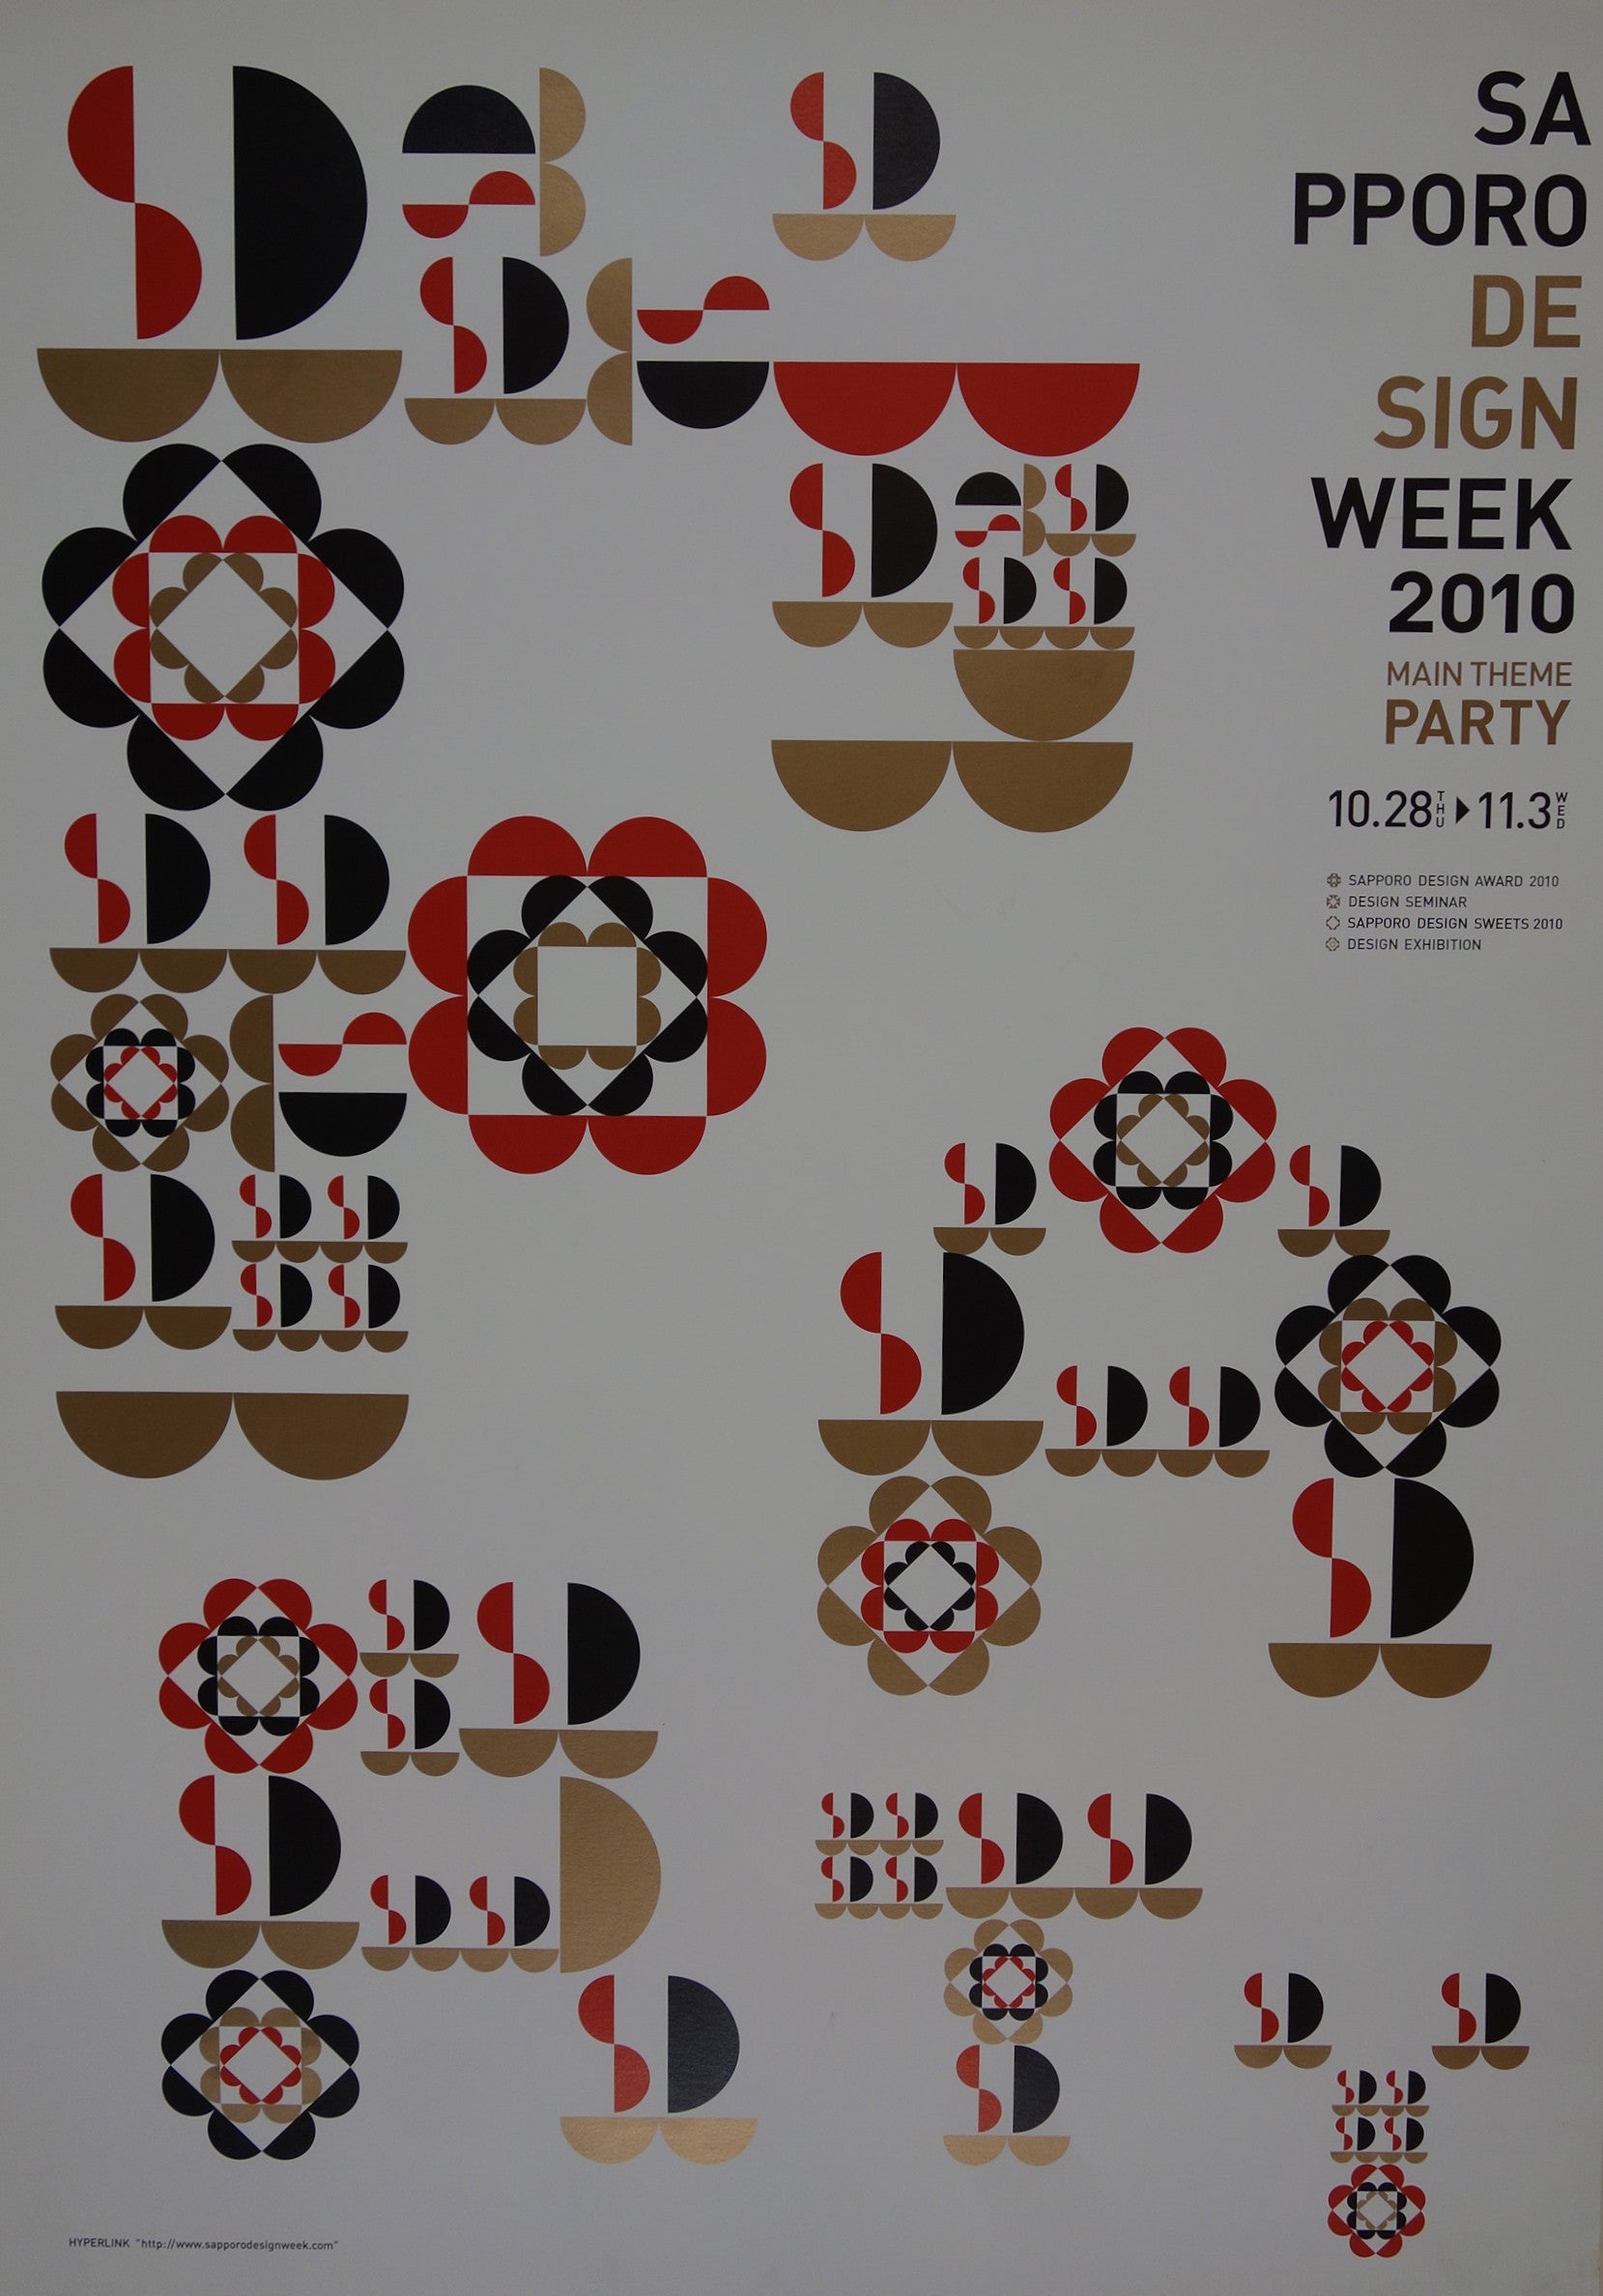 Sapporo Design Week